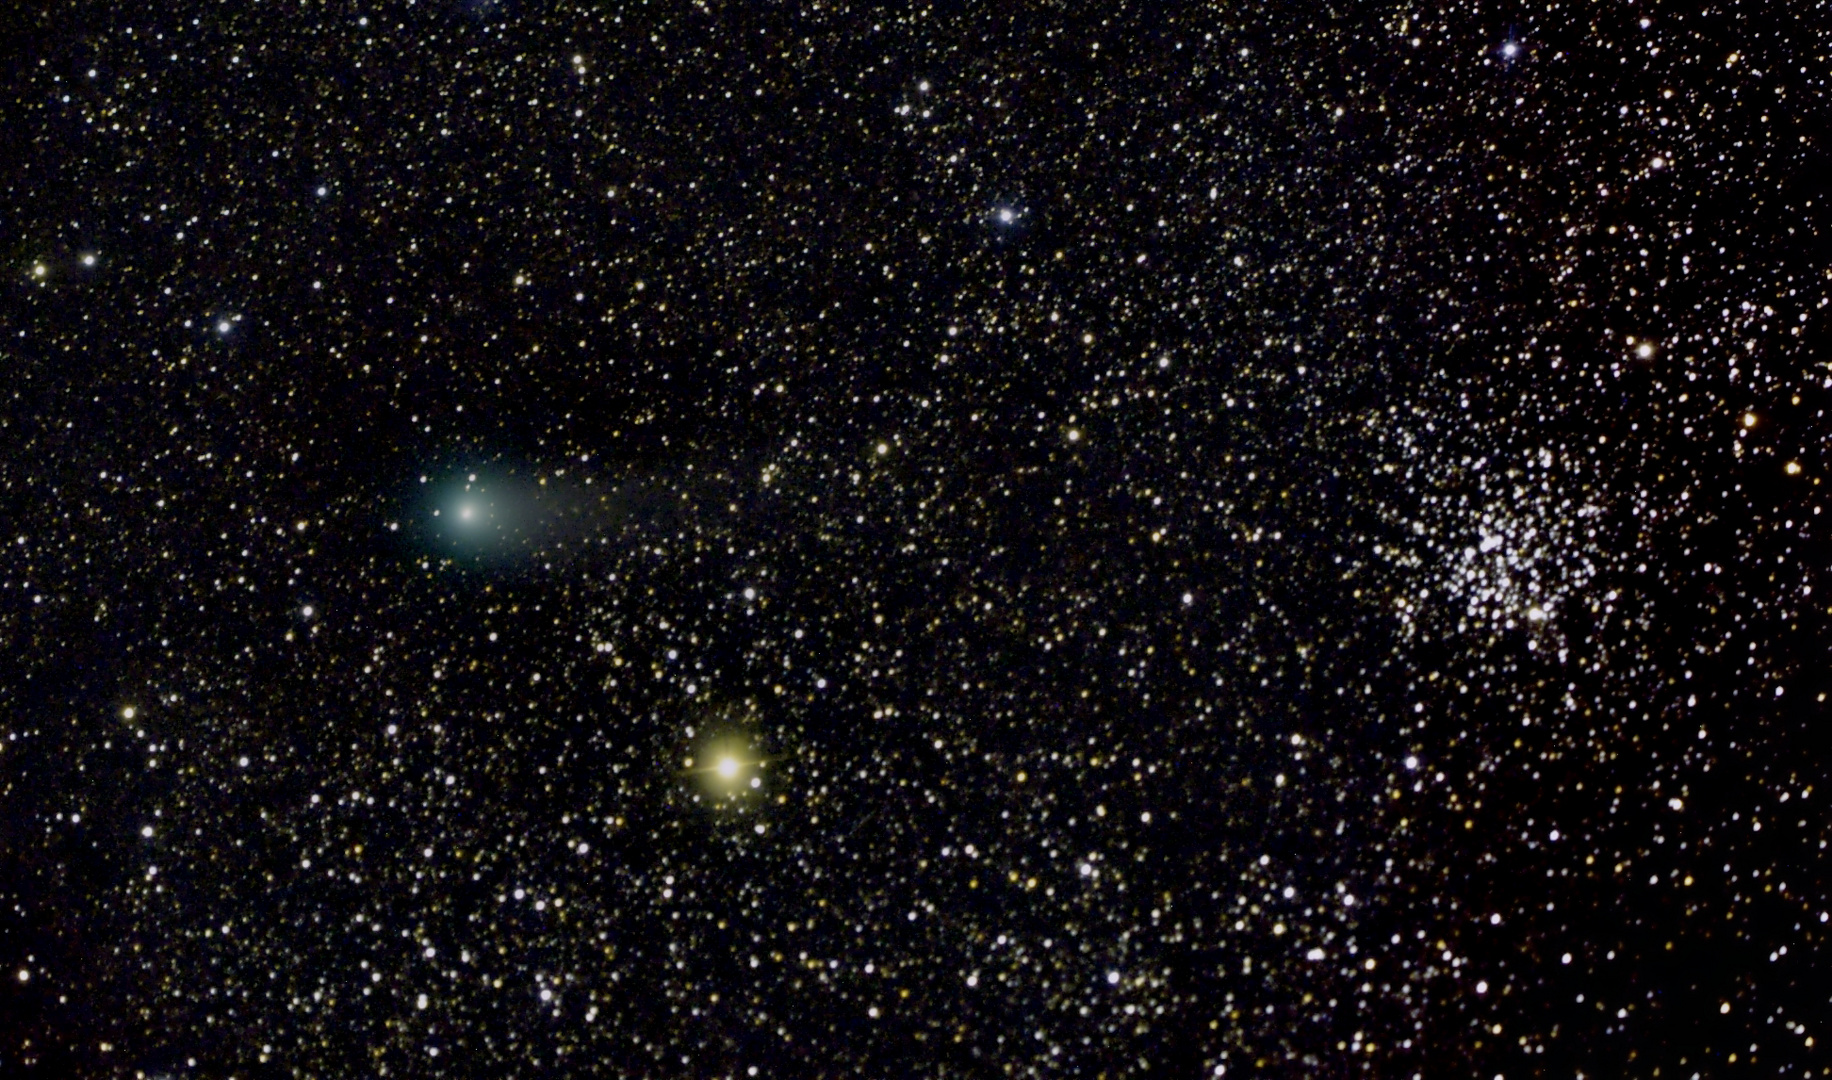 Komet C/2012 F6 Lemmon beim offenen Sternhaufen M52